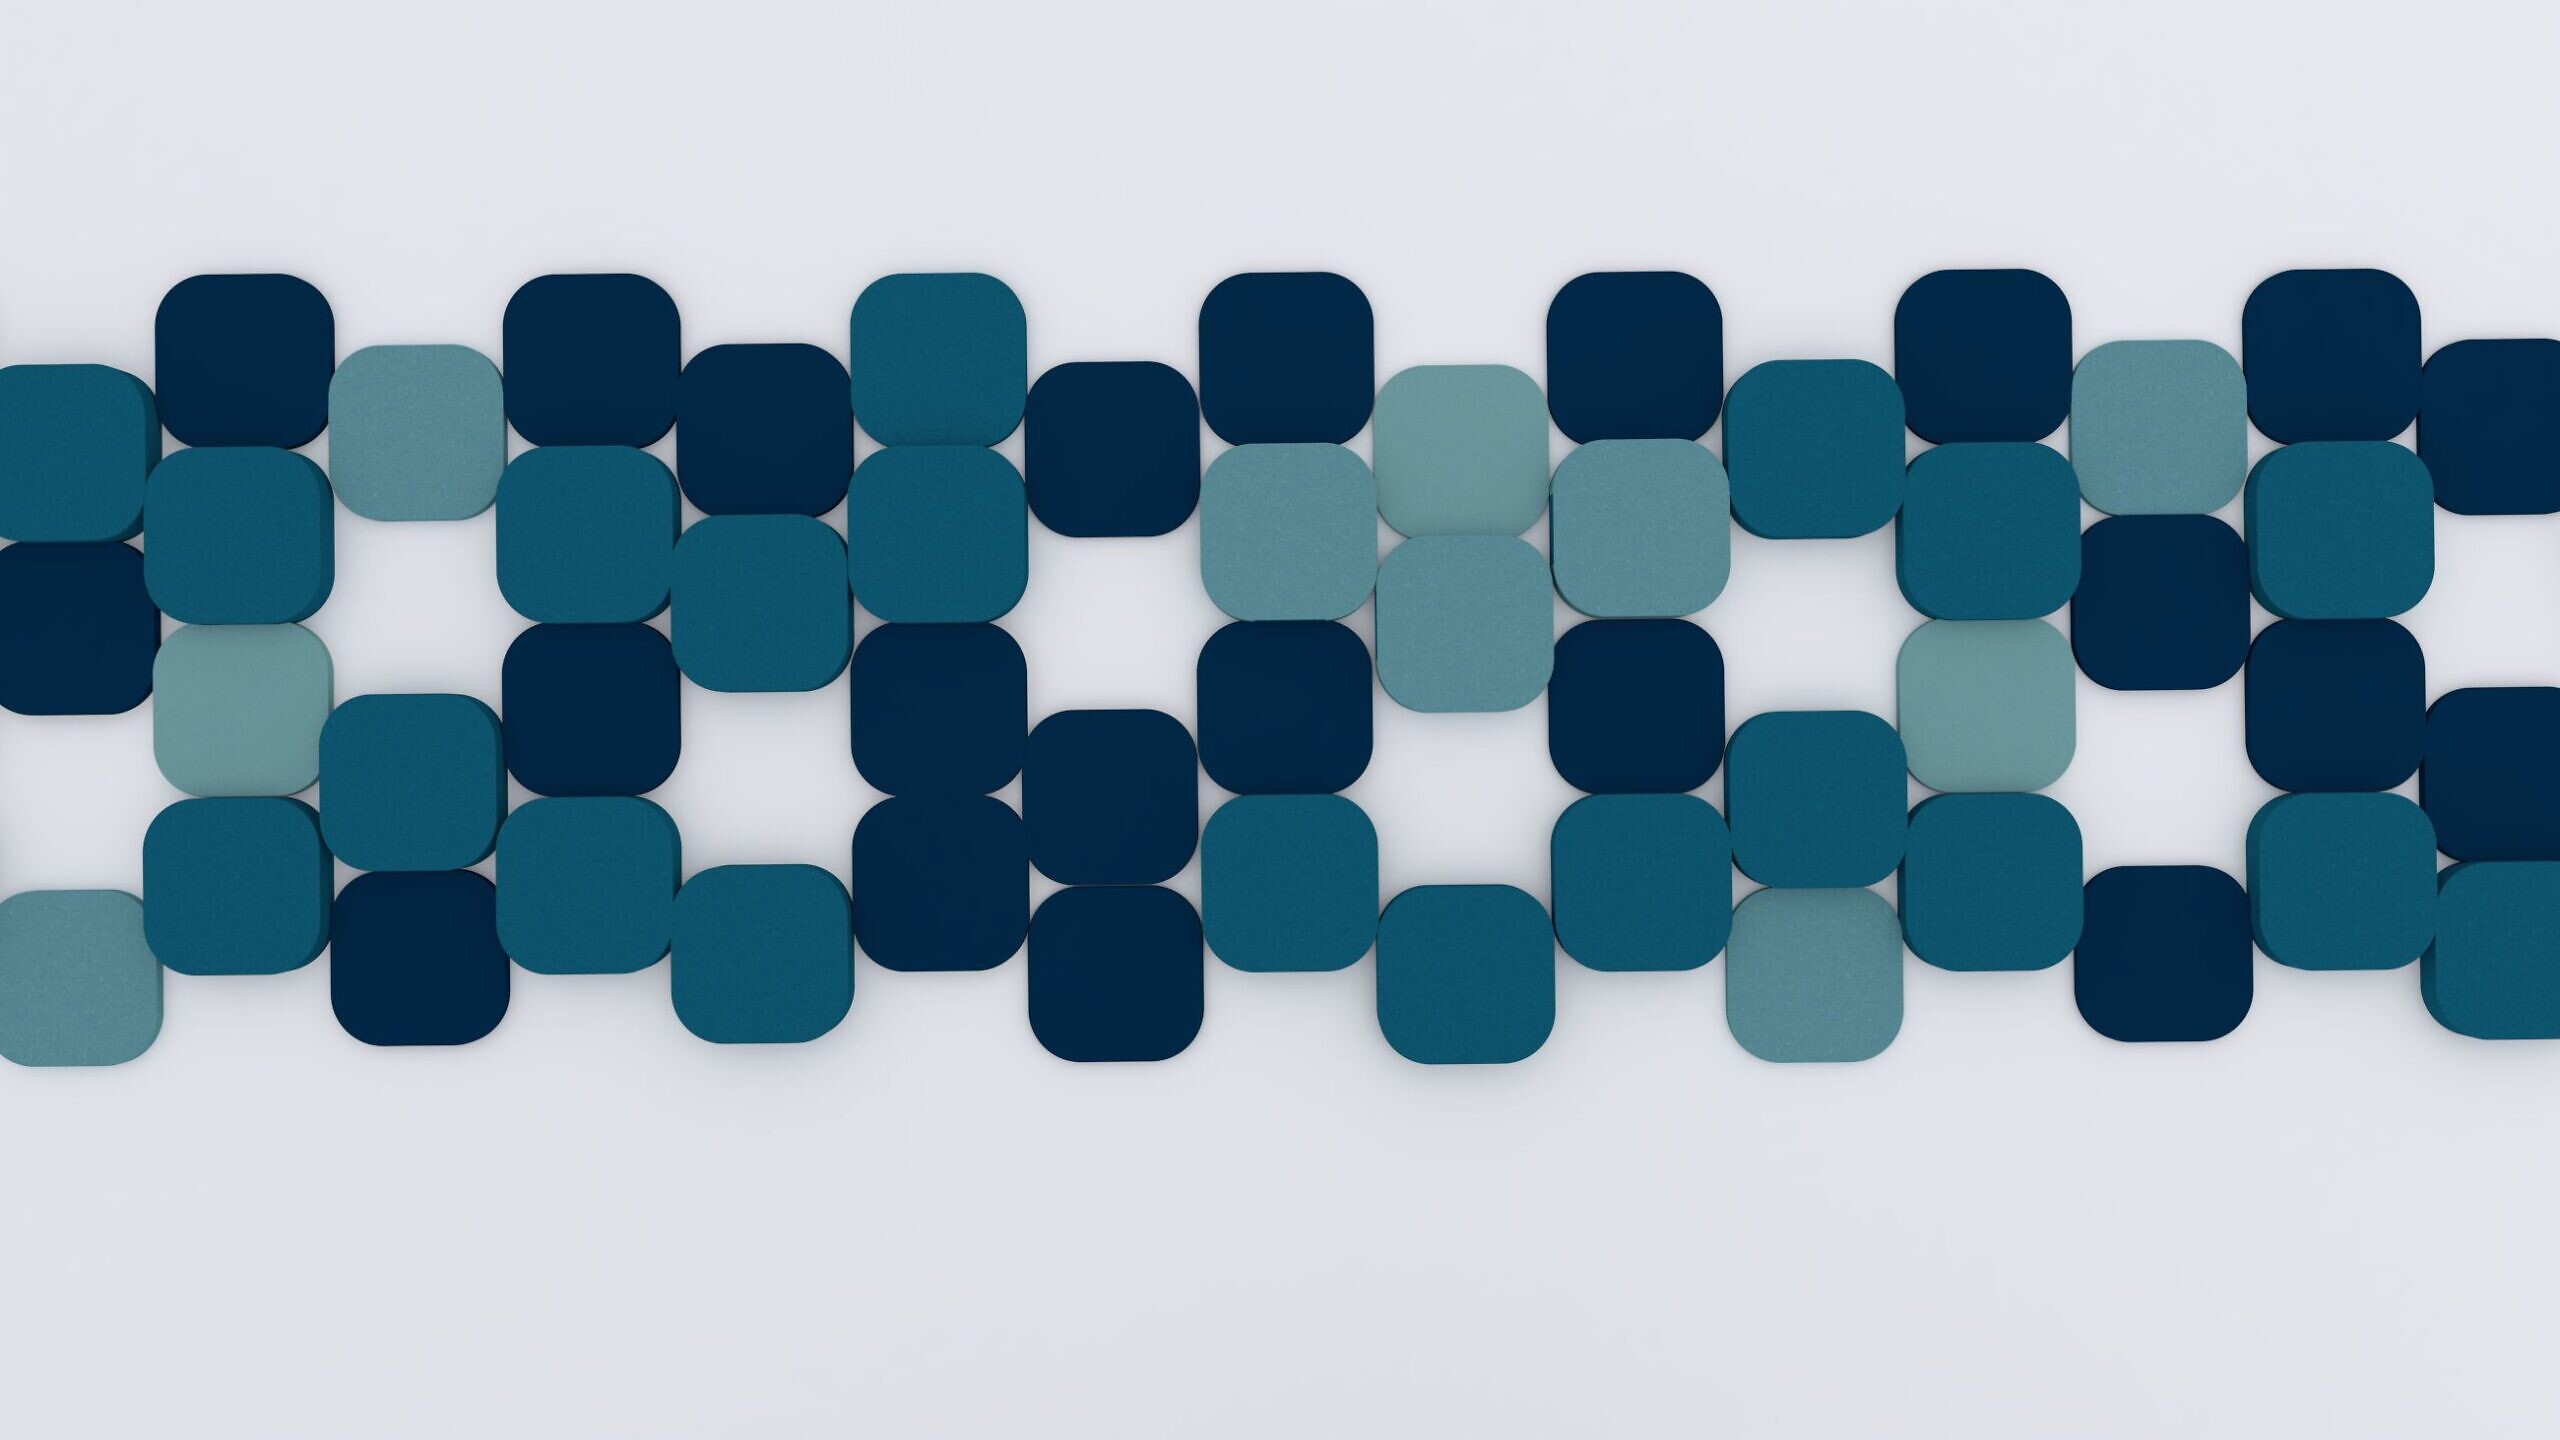 Panel akustyczny Fluffo o wzorze S Cut, składający się z niebieskich i miętowych geometrycznych elementów